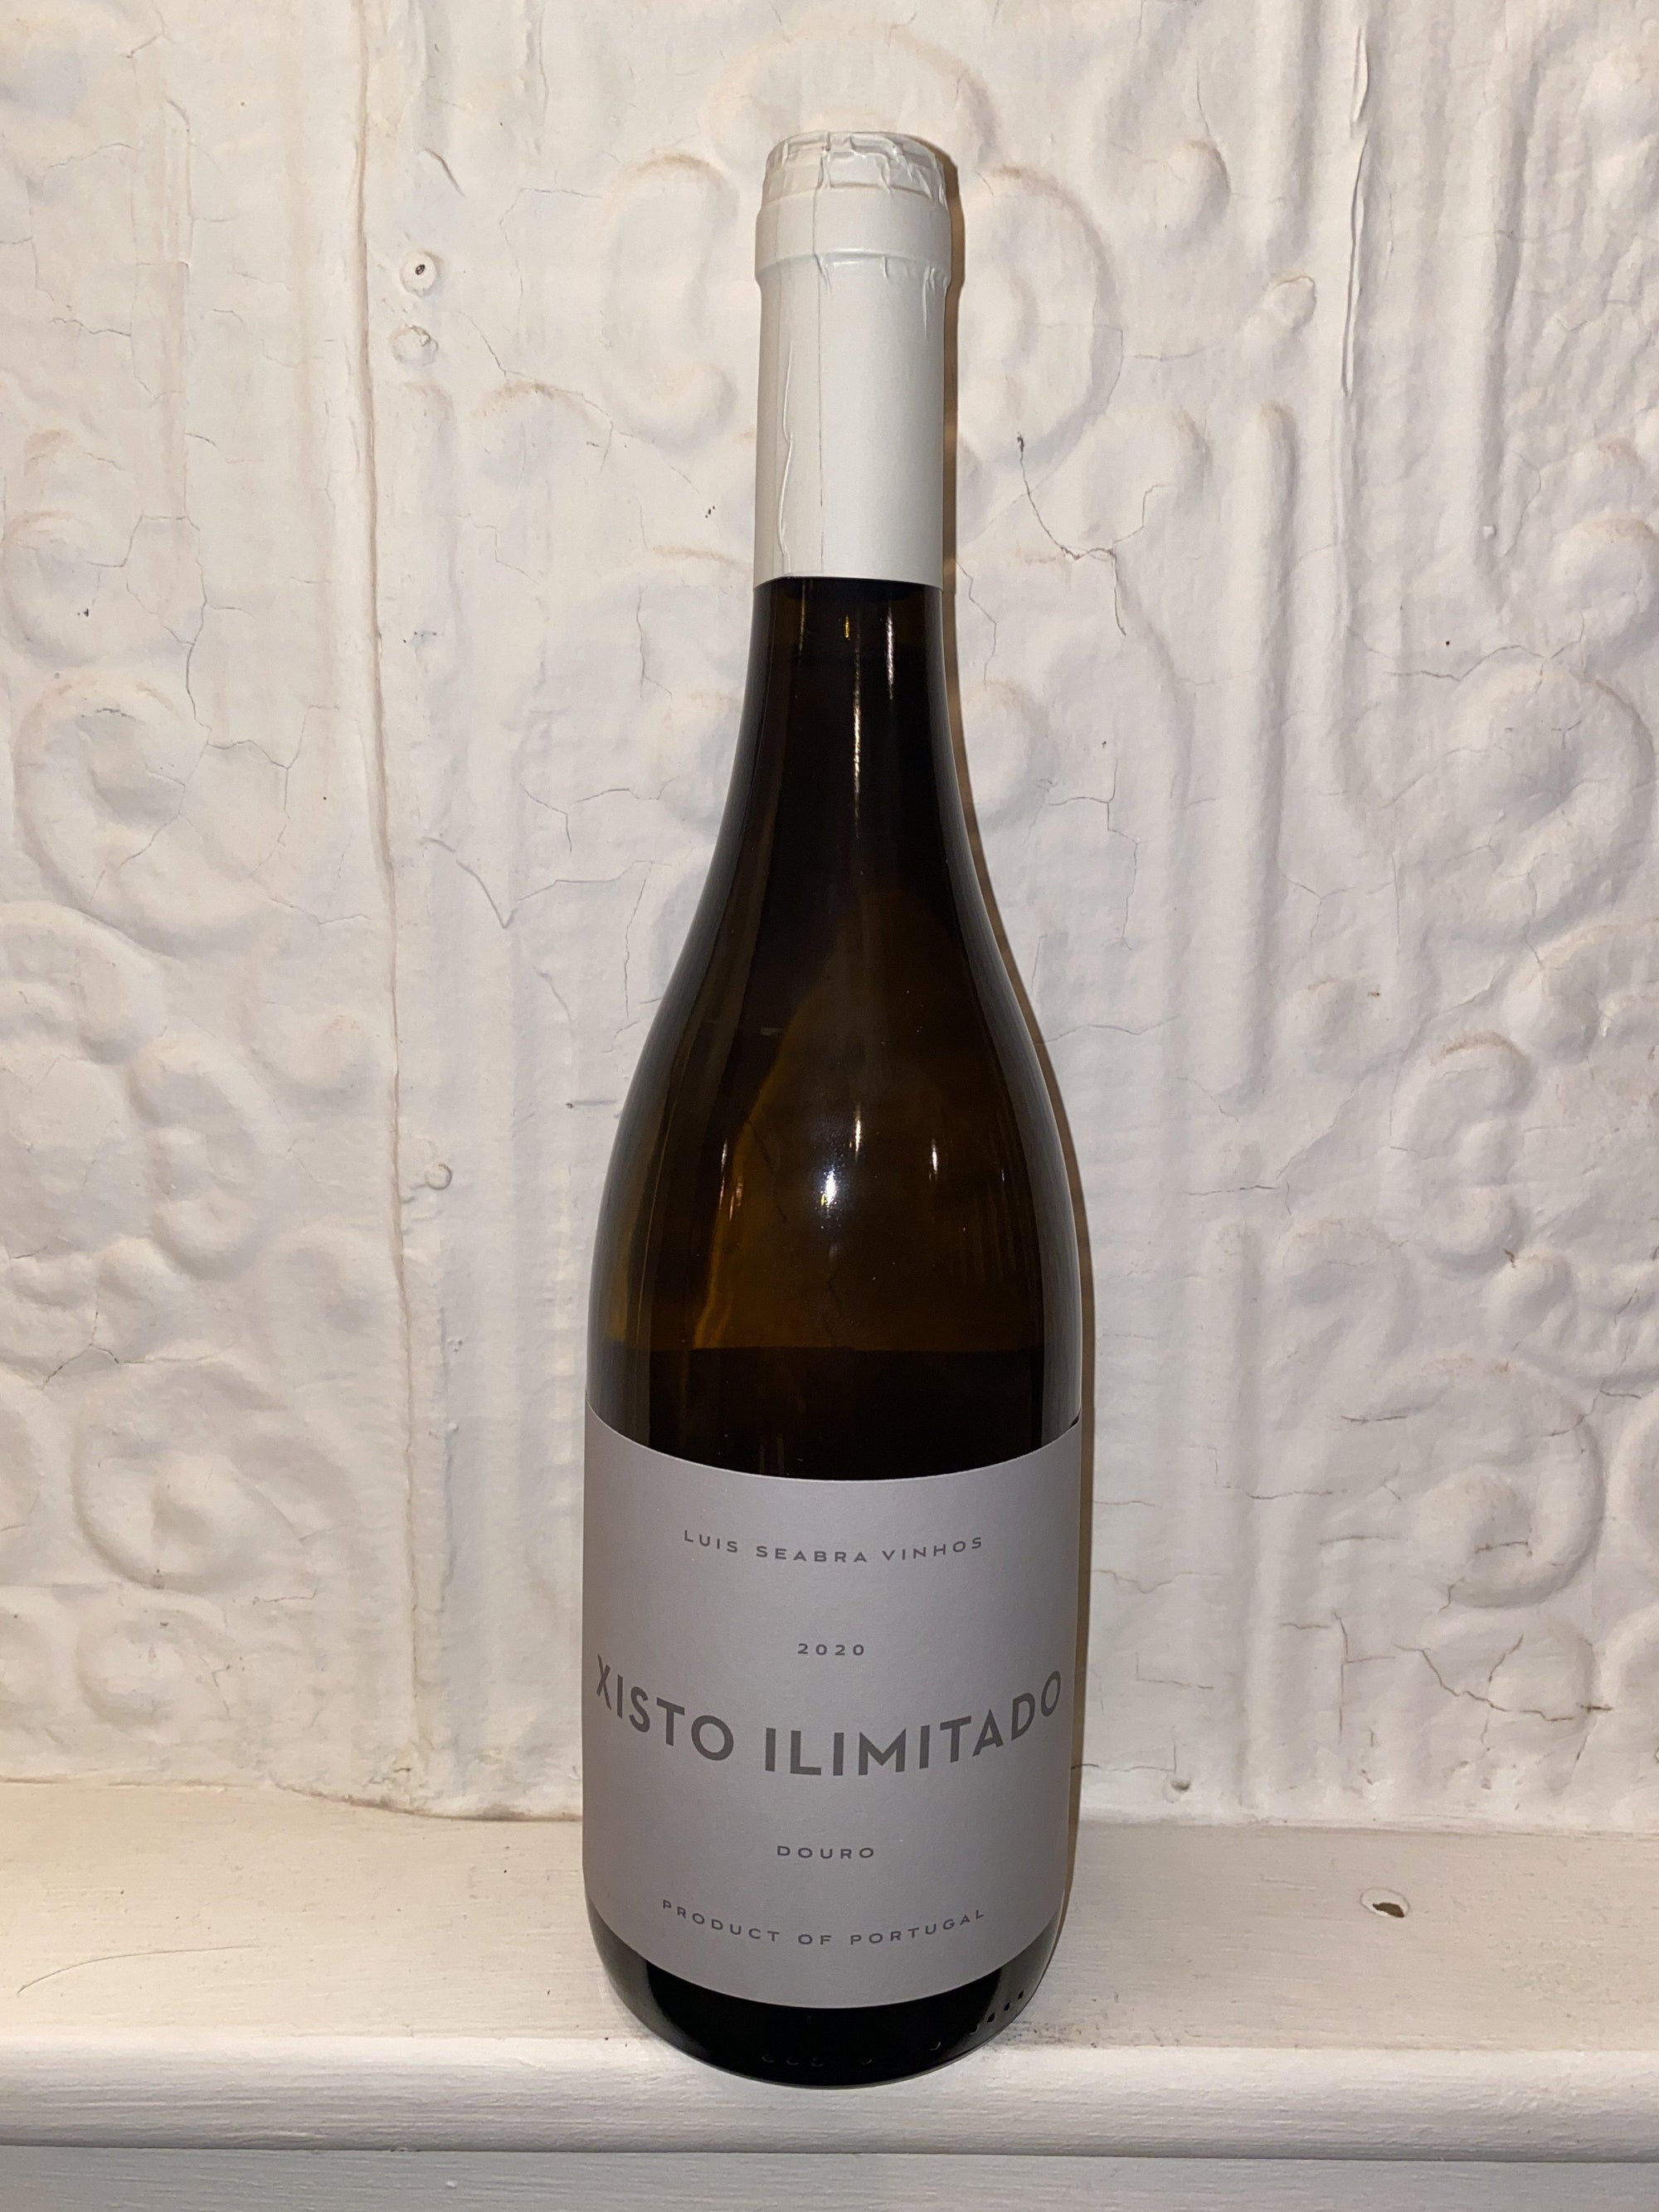 Xisto Ilimitado Branco, Luis Seabra 2020 (Duoro, Portugal)-Wine-Bibber & Bell